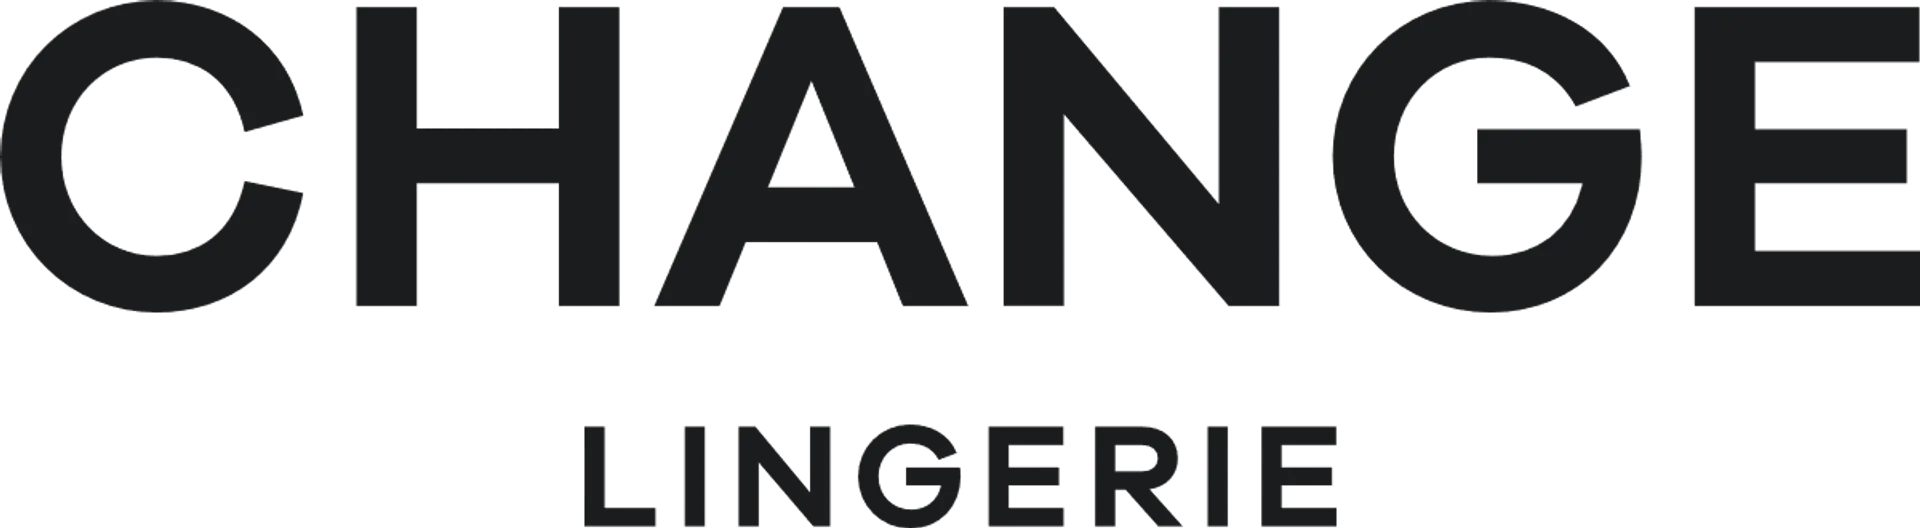 CHANGE LINGERIE logo